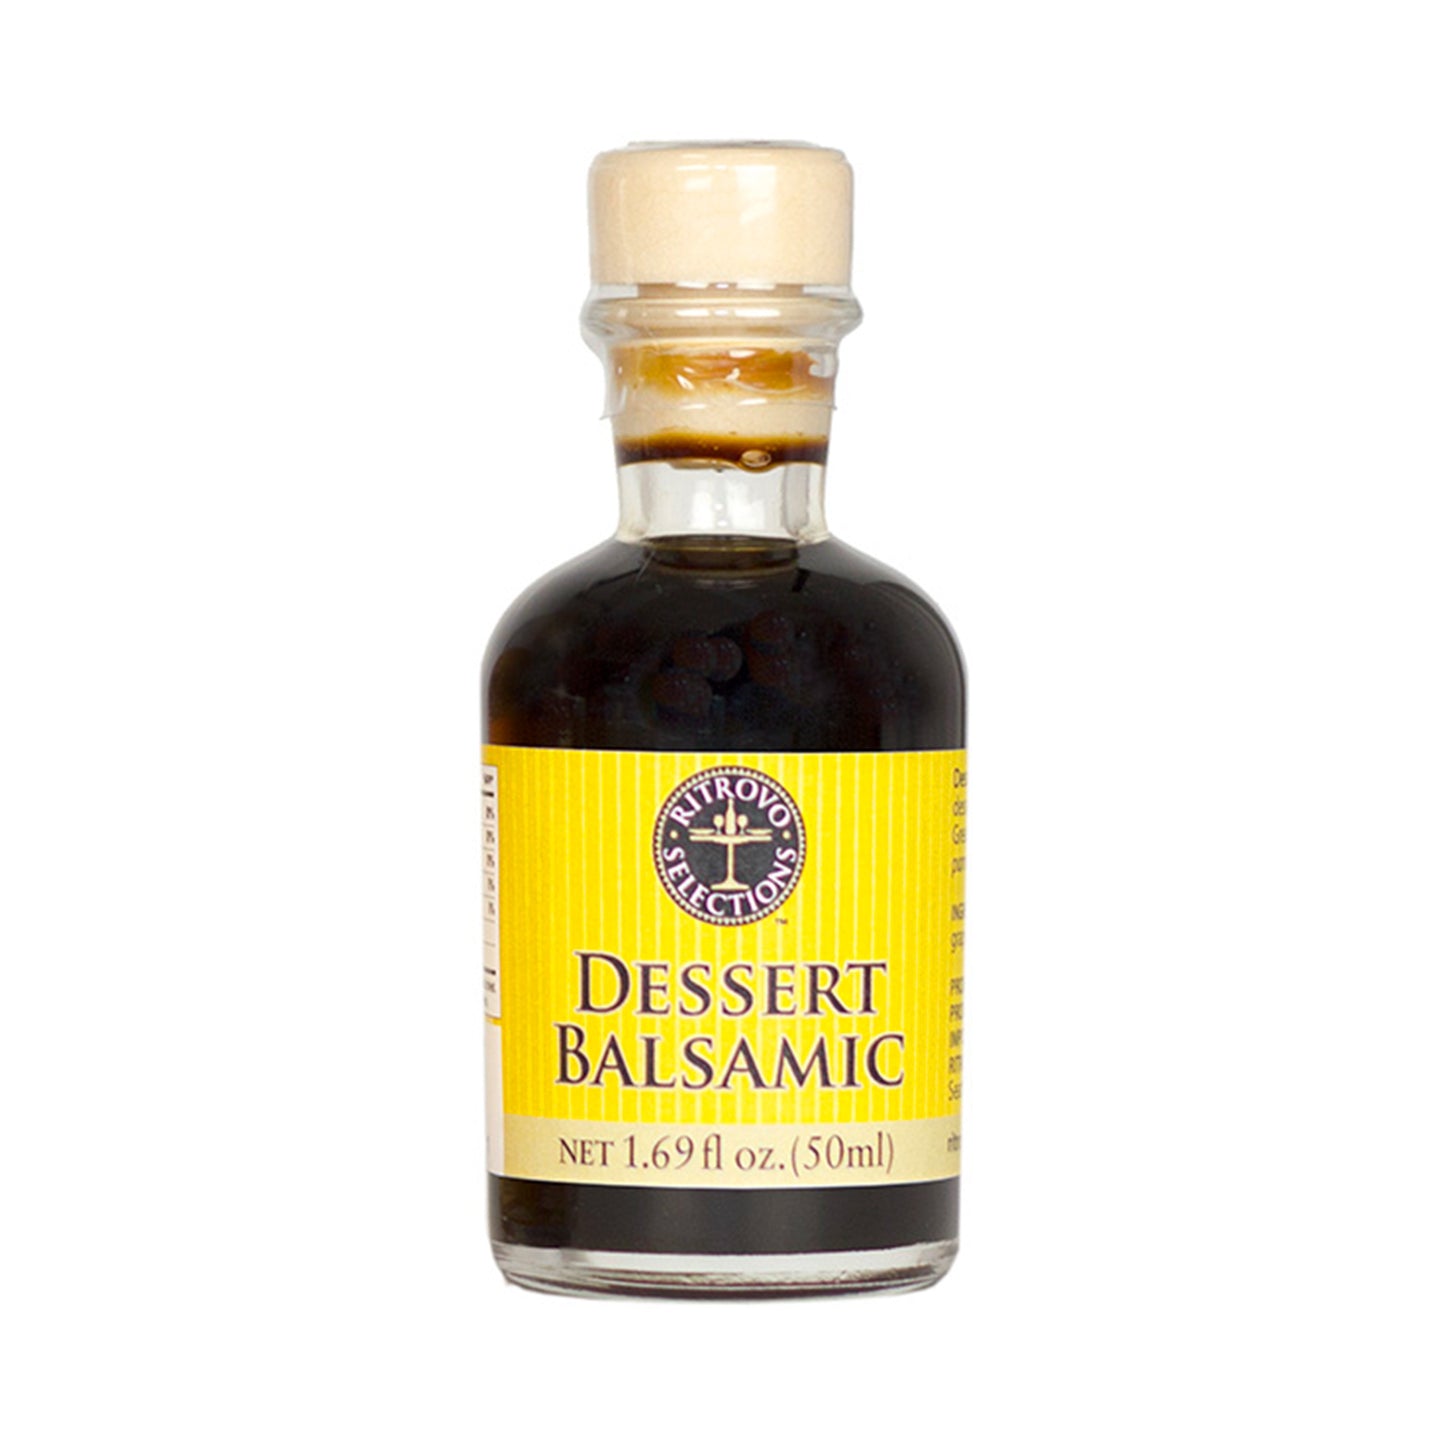 VR aceti Balsam Dessert Balsamic - Mini